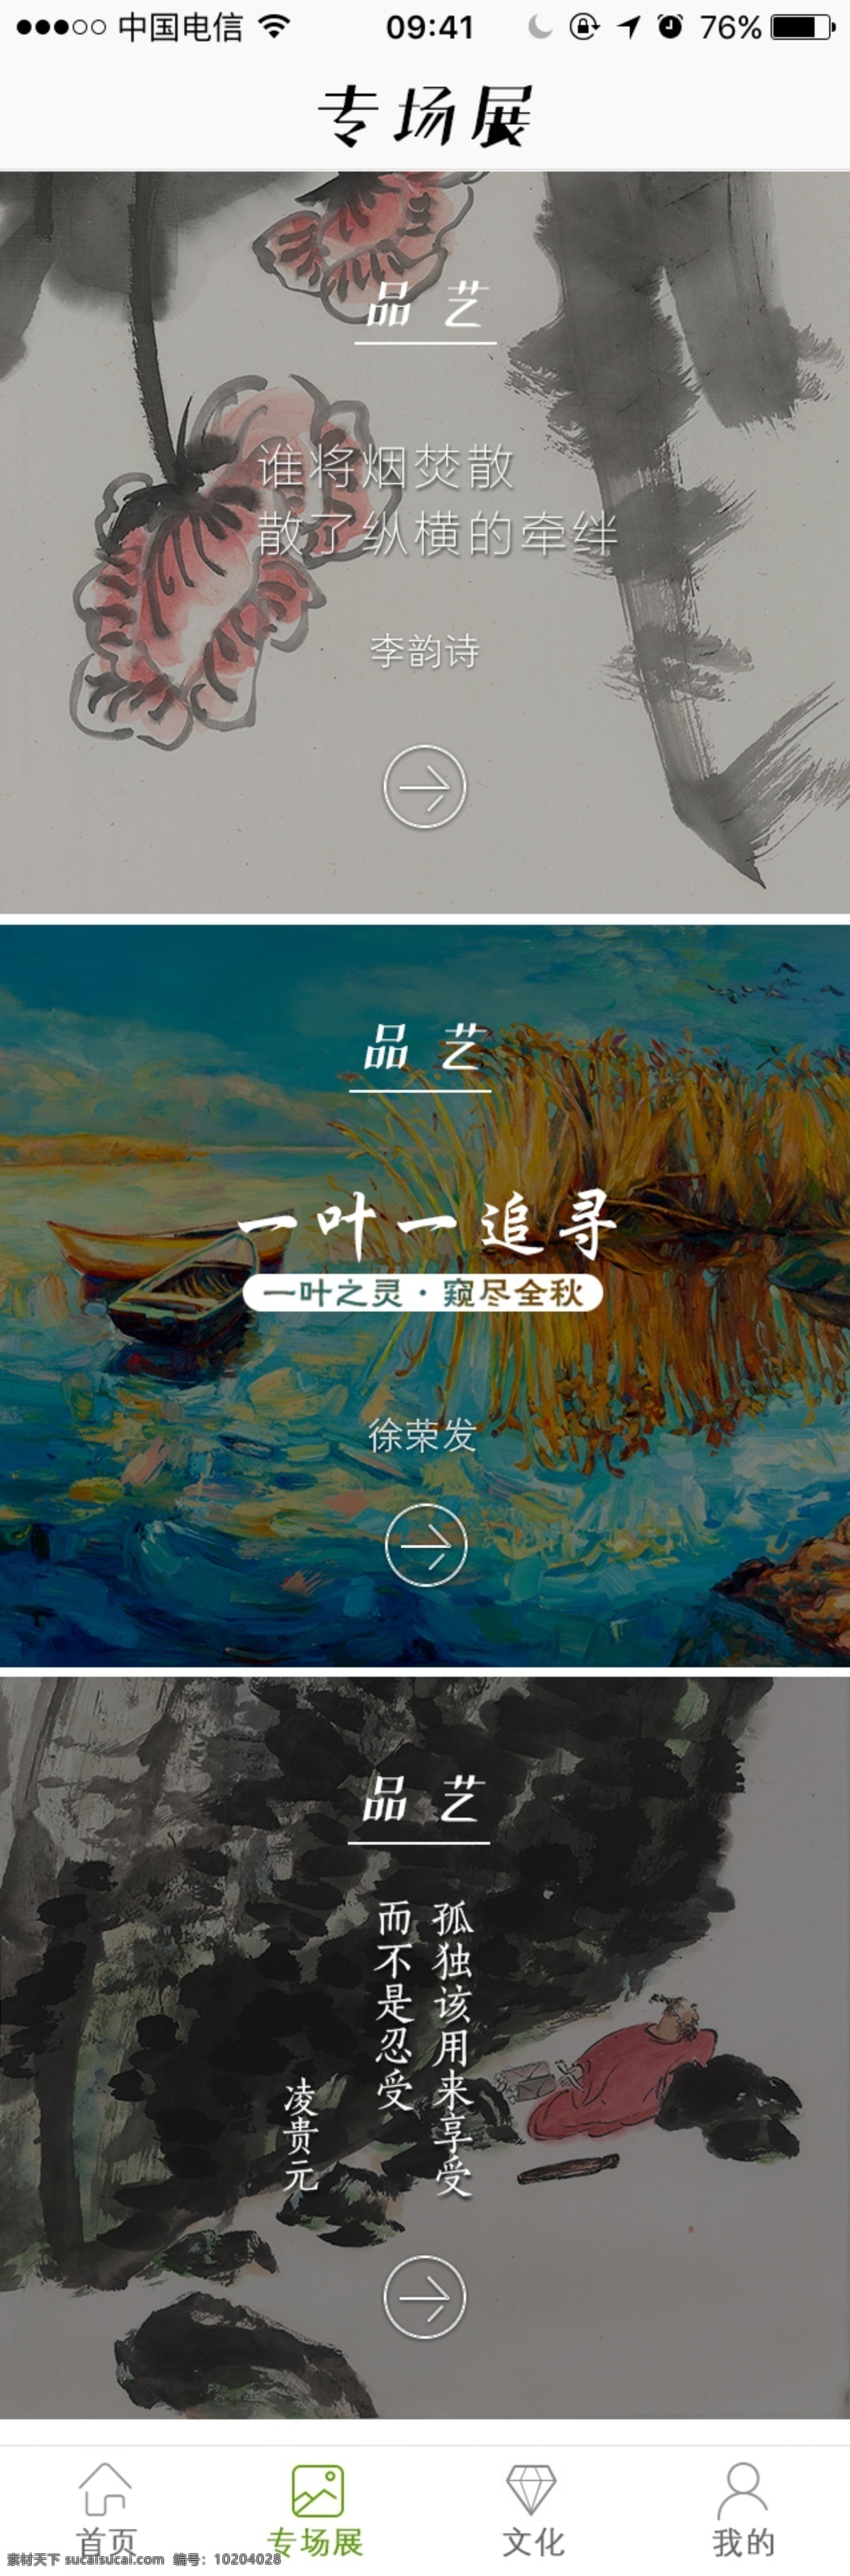 ui app 中国 风 界面设计 画展 山水画 排版 界面排版 专场展示 展示画